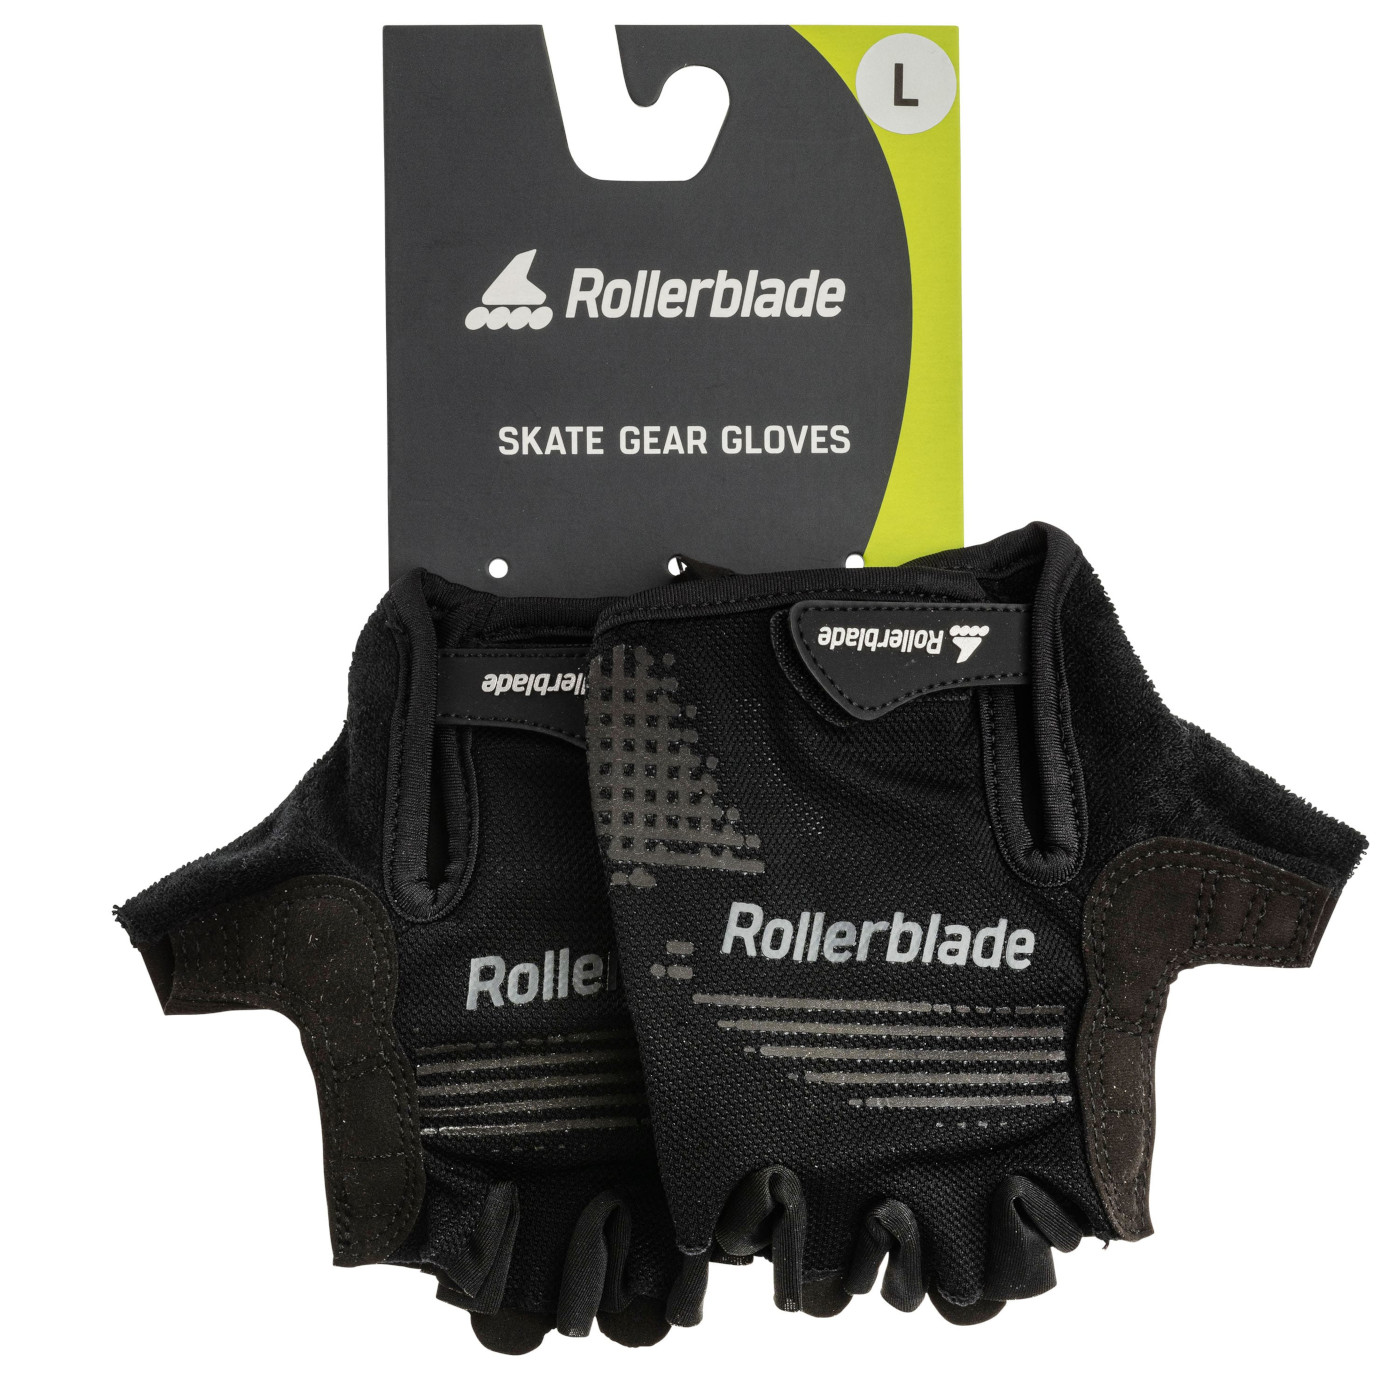 Foto de Rollerblade Skate Gear Gloves - Protectores de manos - negro